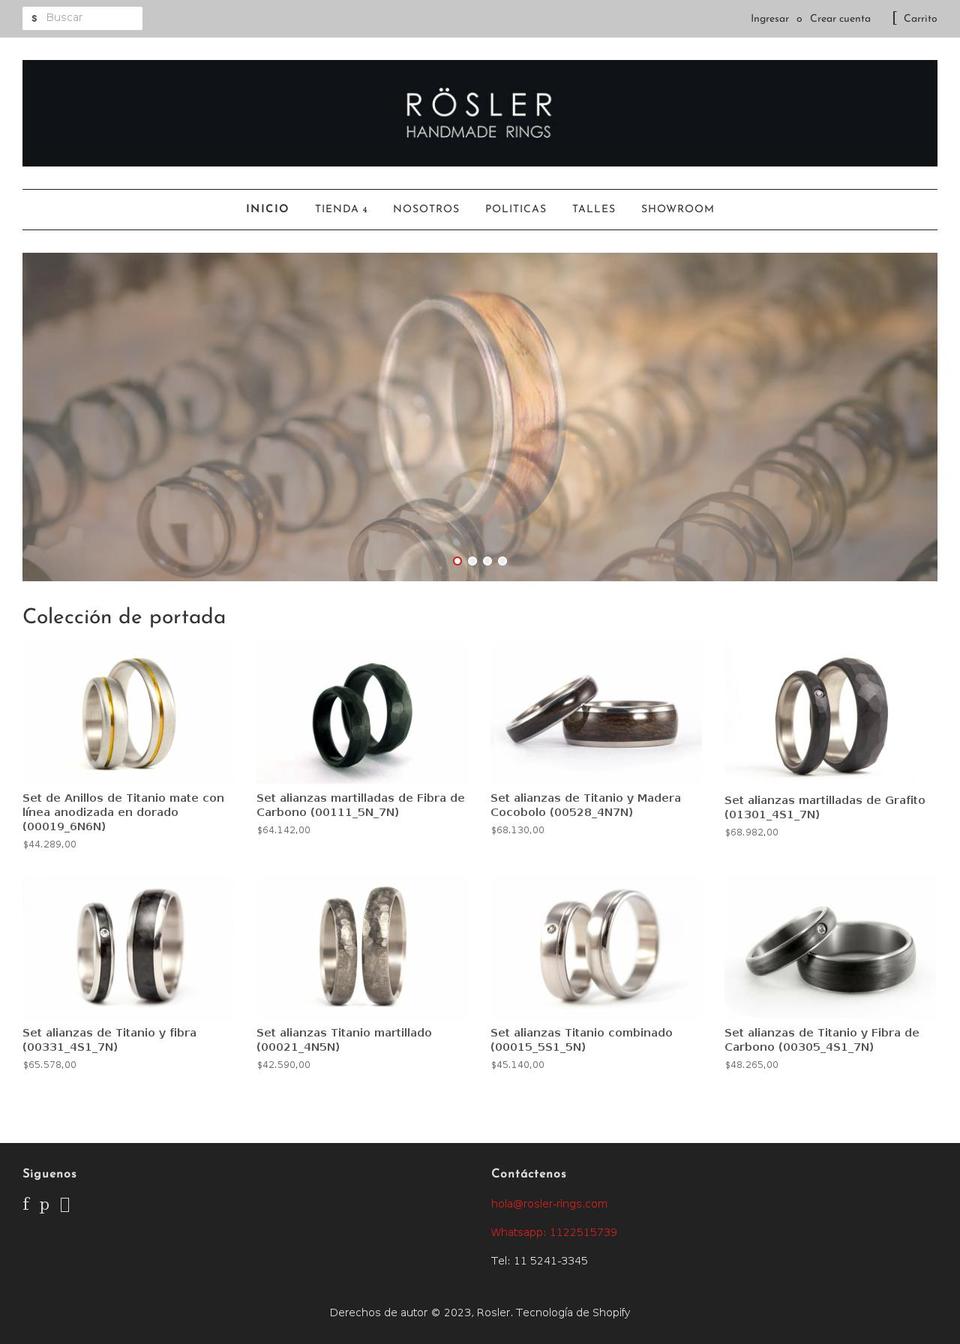 rosler.com.ar shopify website screenshot